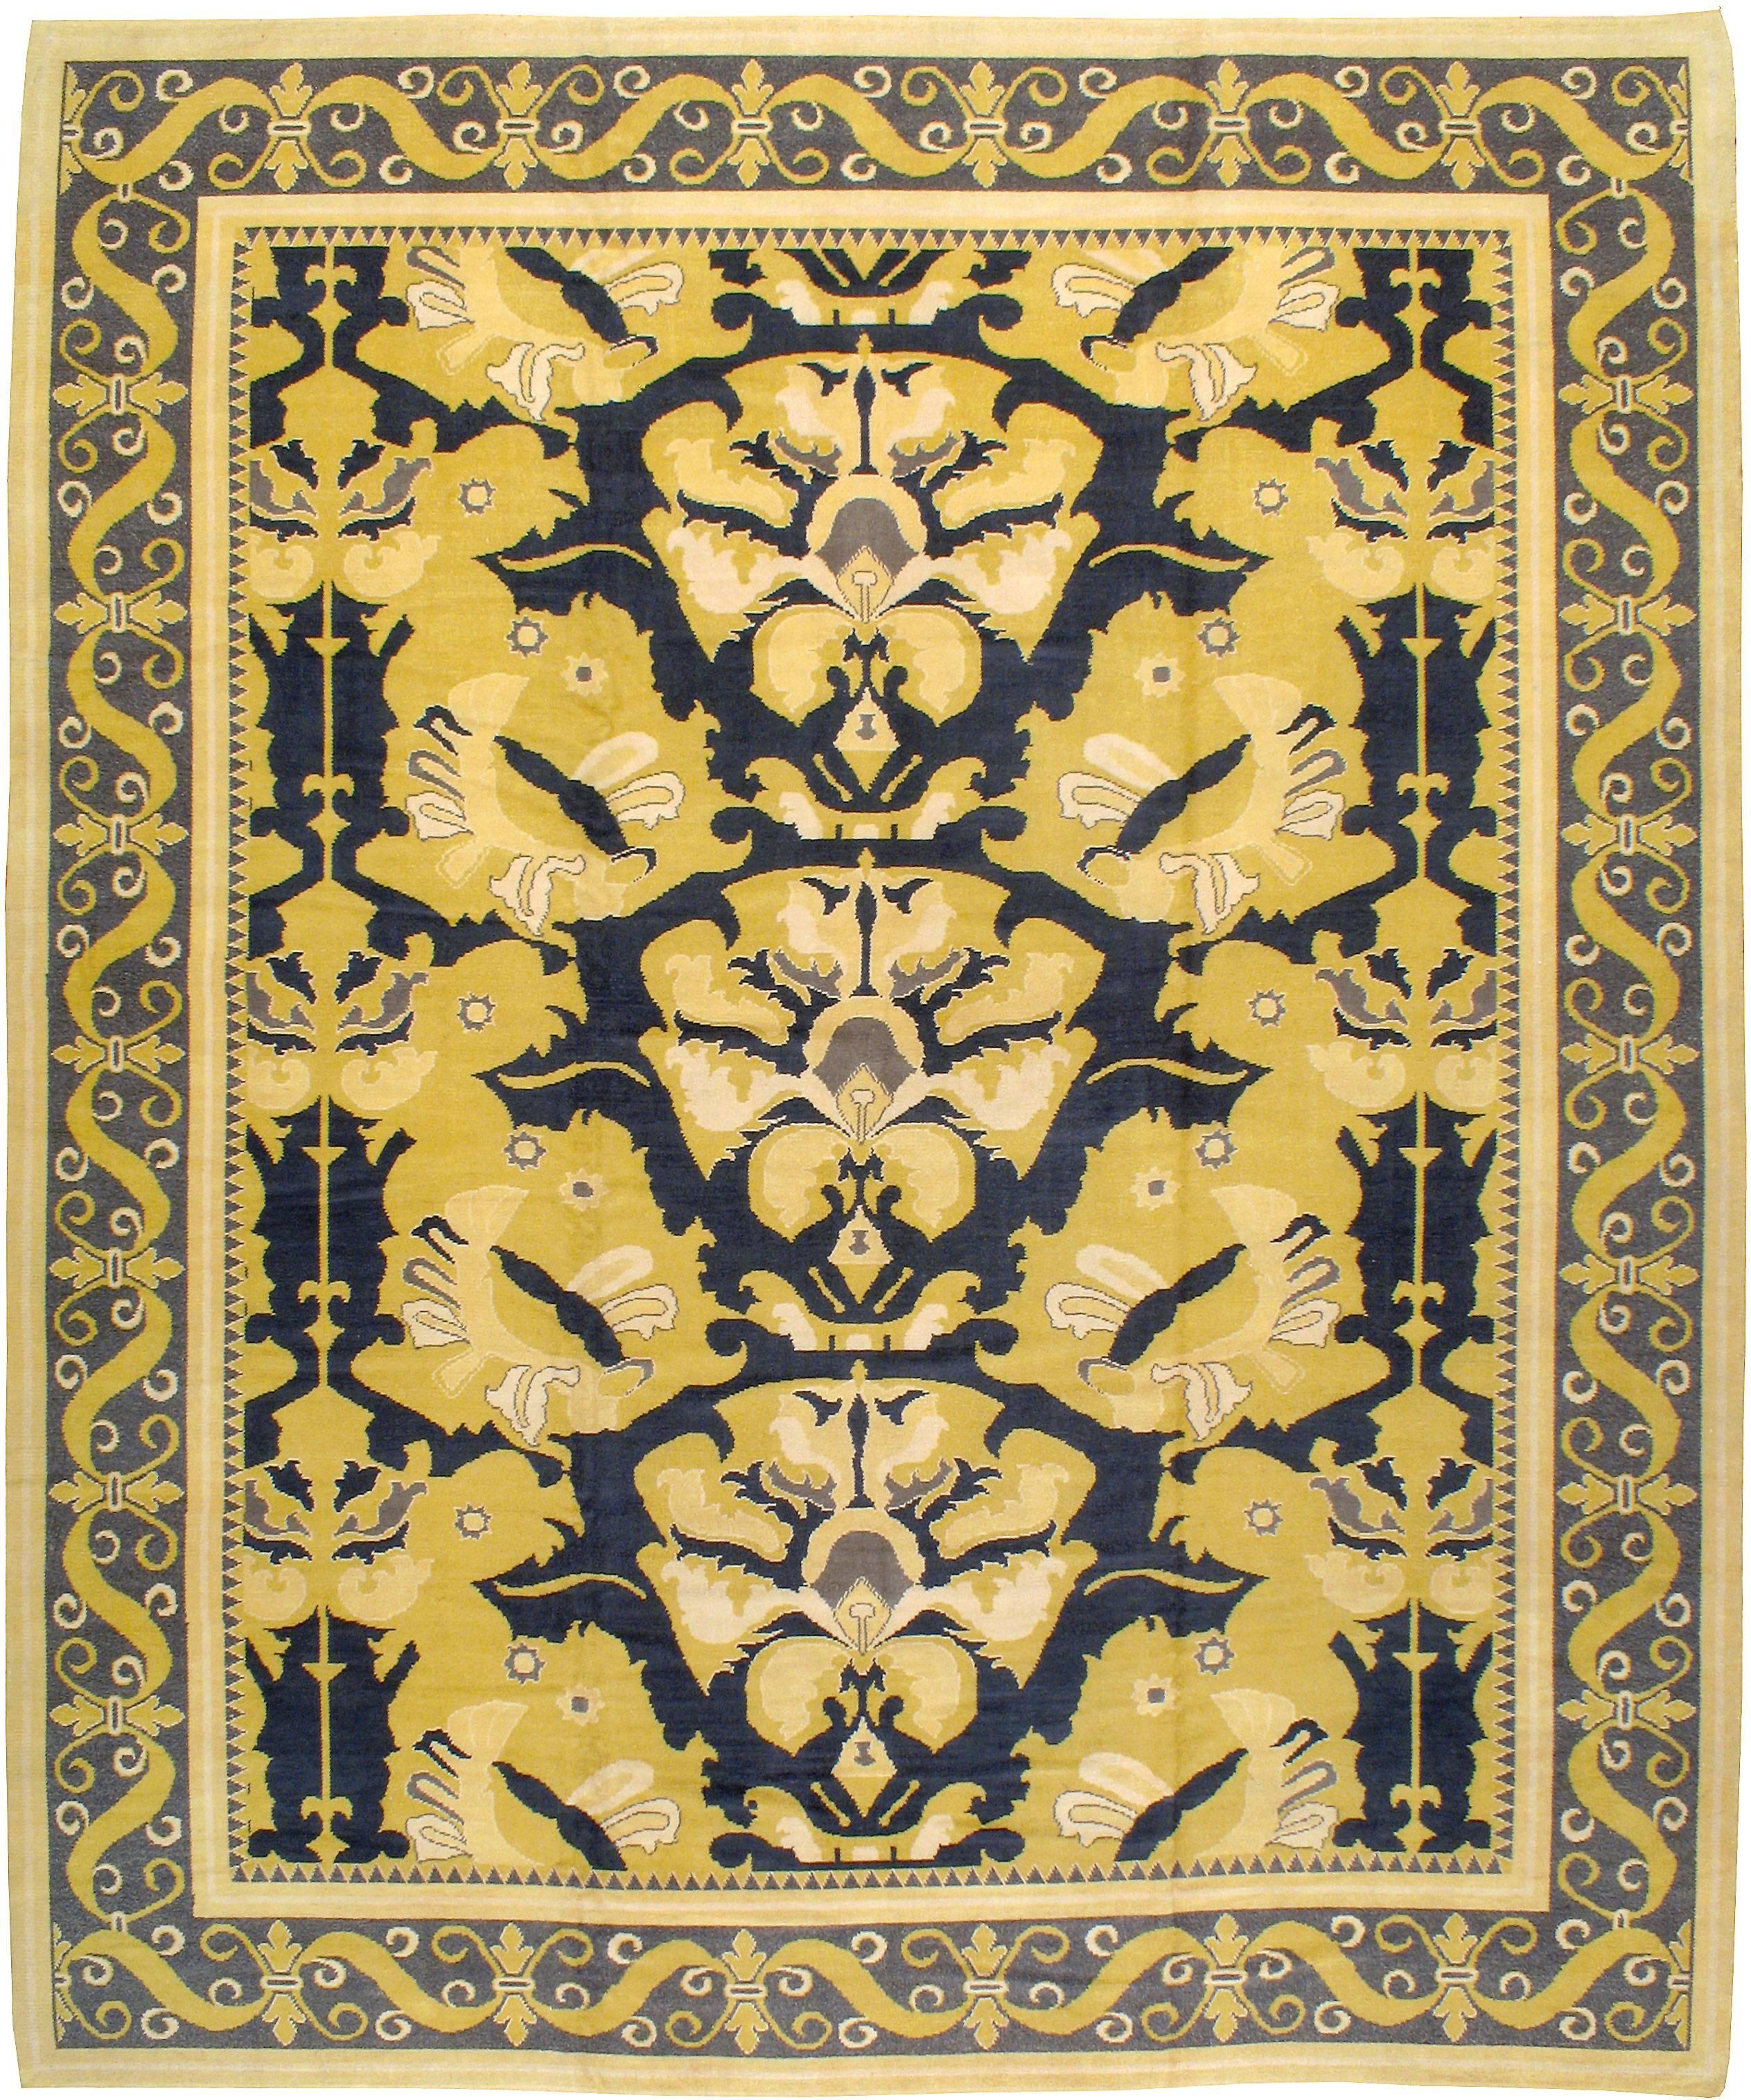 Ein alter spanischer Cuenca-Teppich aus der Mitte des 20. Jahrhunderts, der an die Arts & Crafts-Bewegung erinnert und in Mitternachtsblau und Safran ausgeführt ist.

Maße: 11' 10